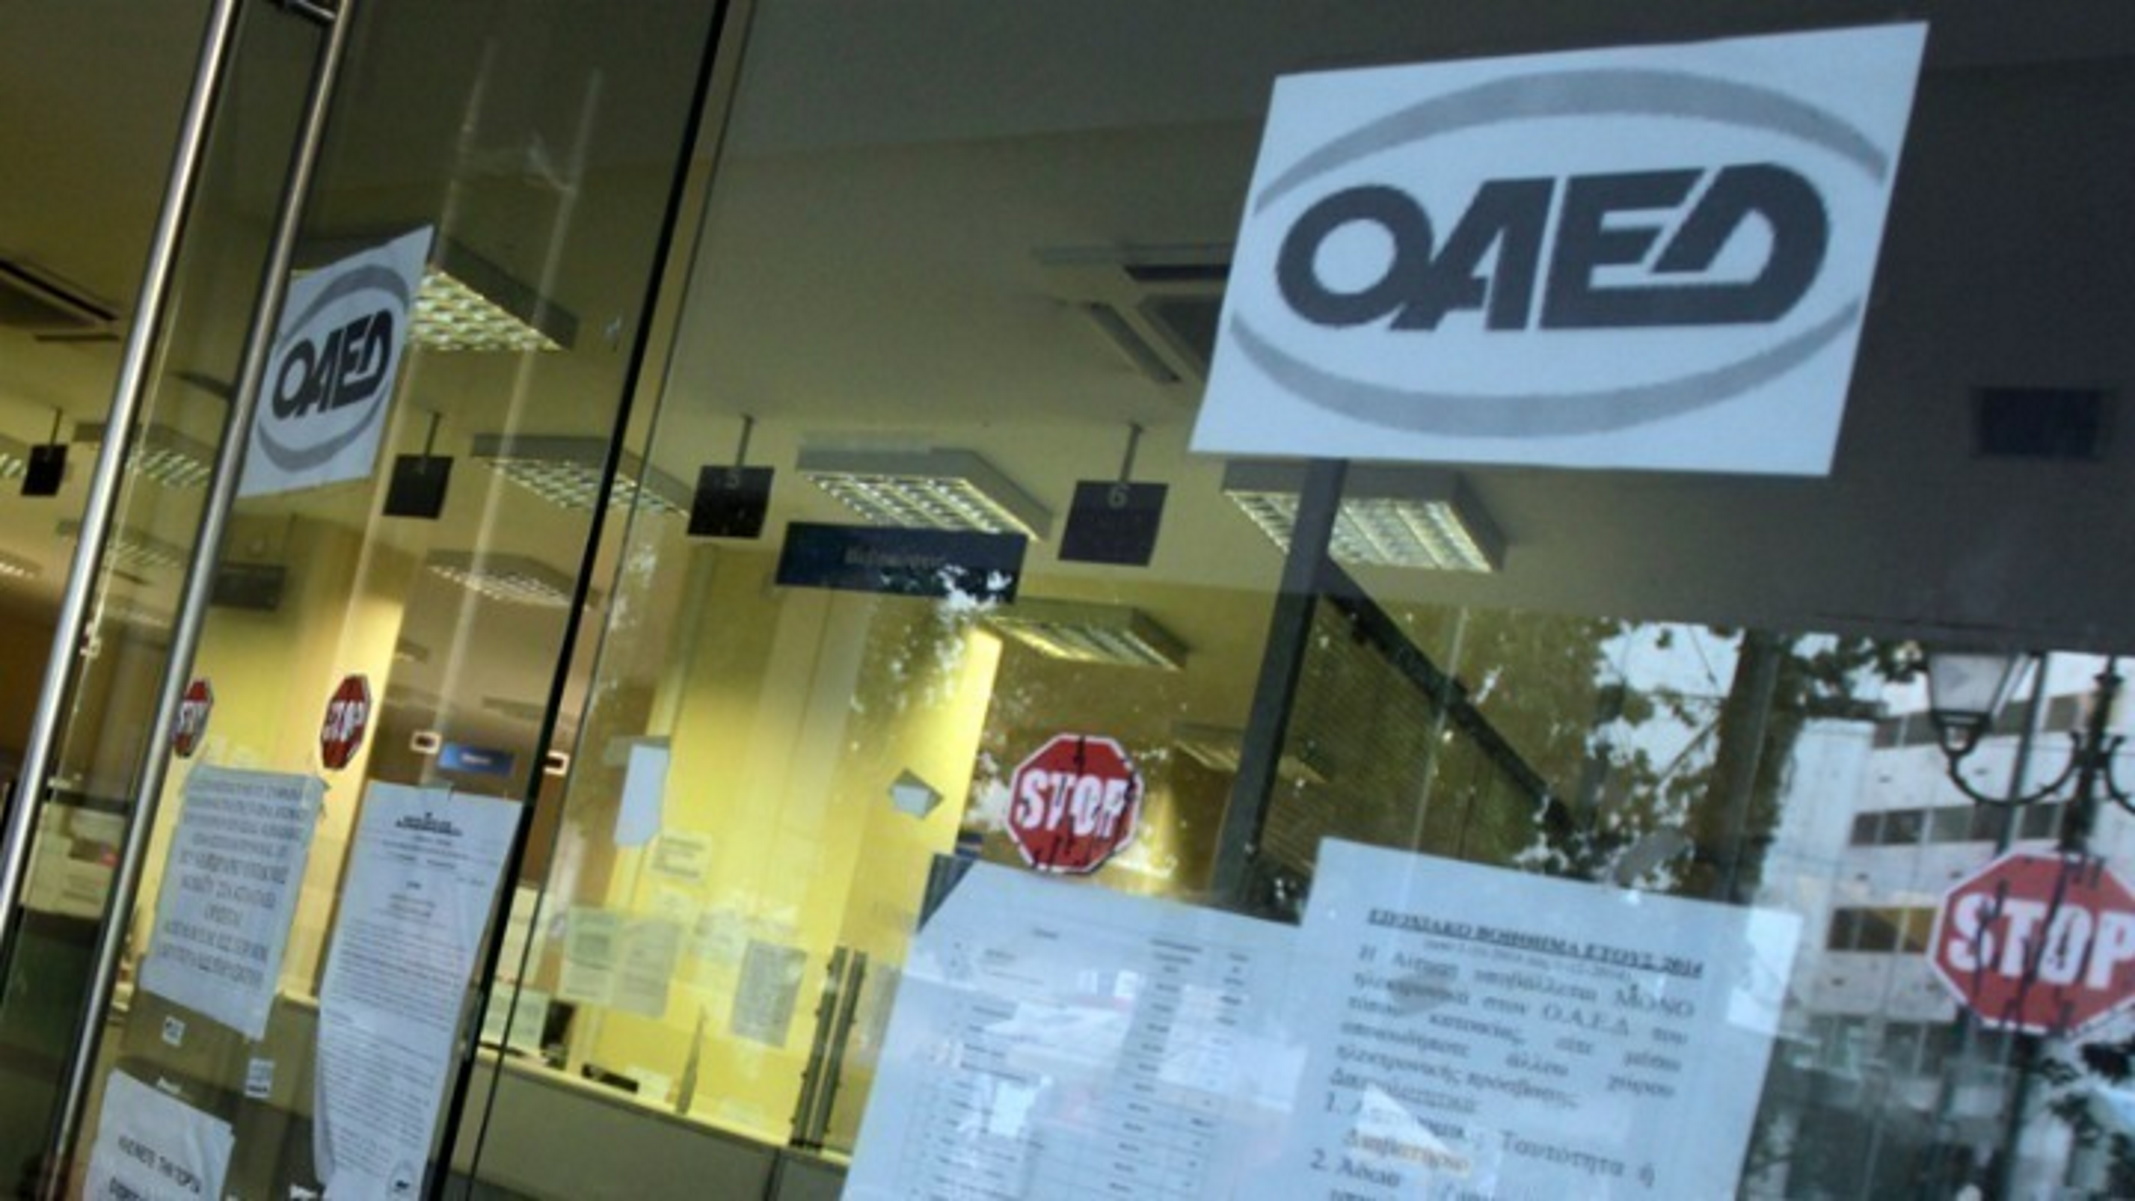 ΟΑΕΔ: Κατέβαλε 958 εκατ. ευρώ στο πρώτο εξάμηνο του έτους για στήριξη της εργασίας